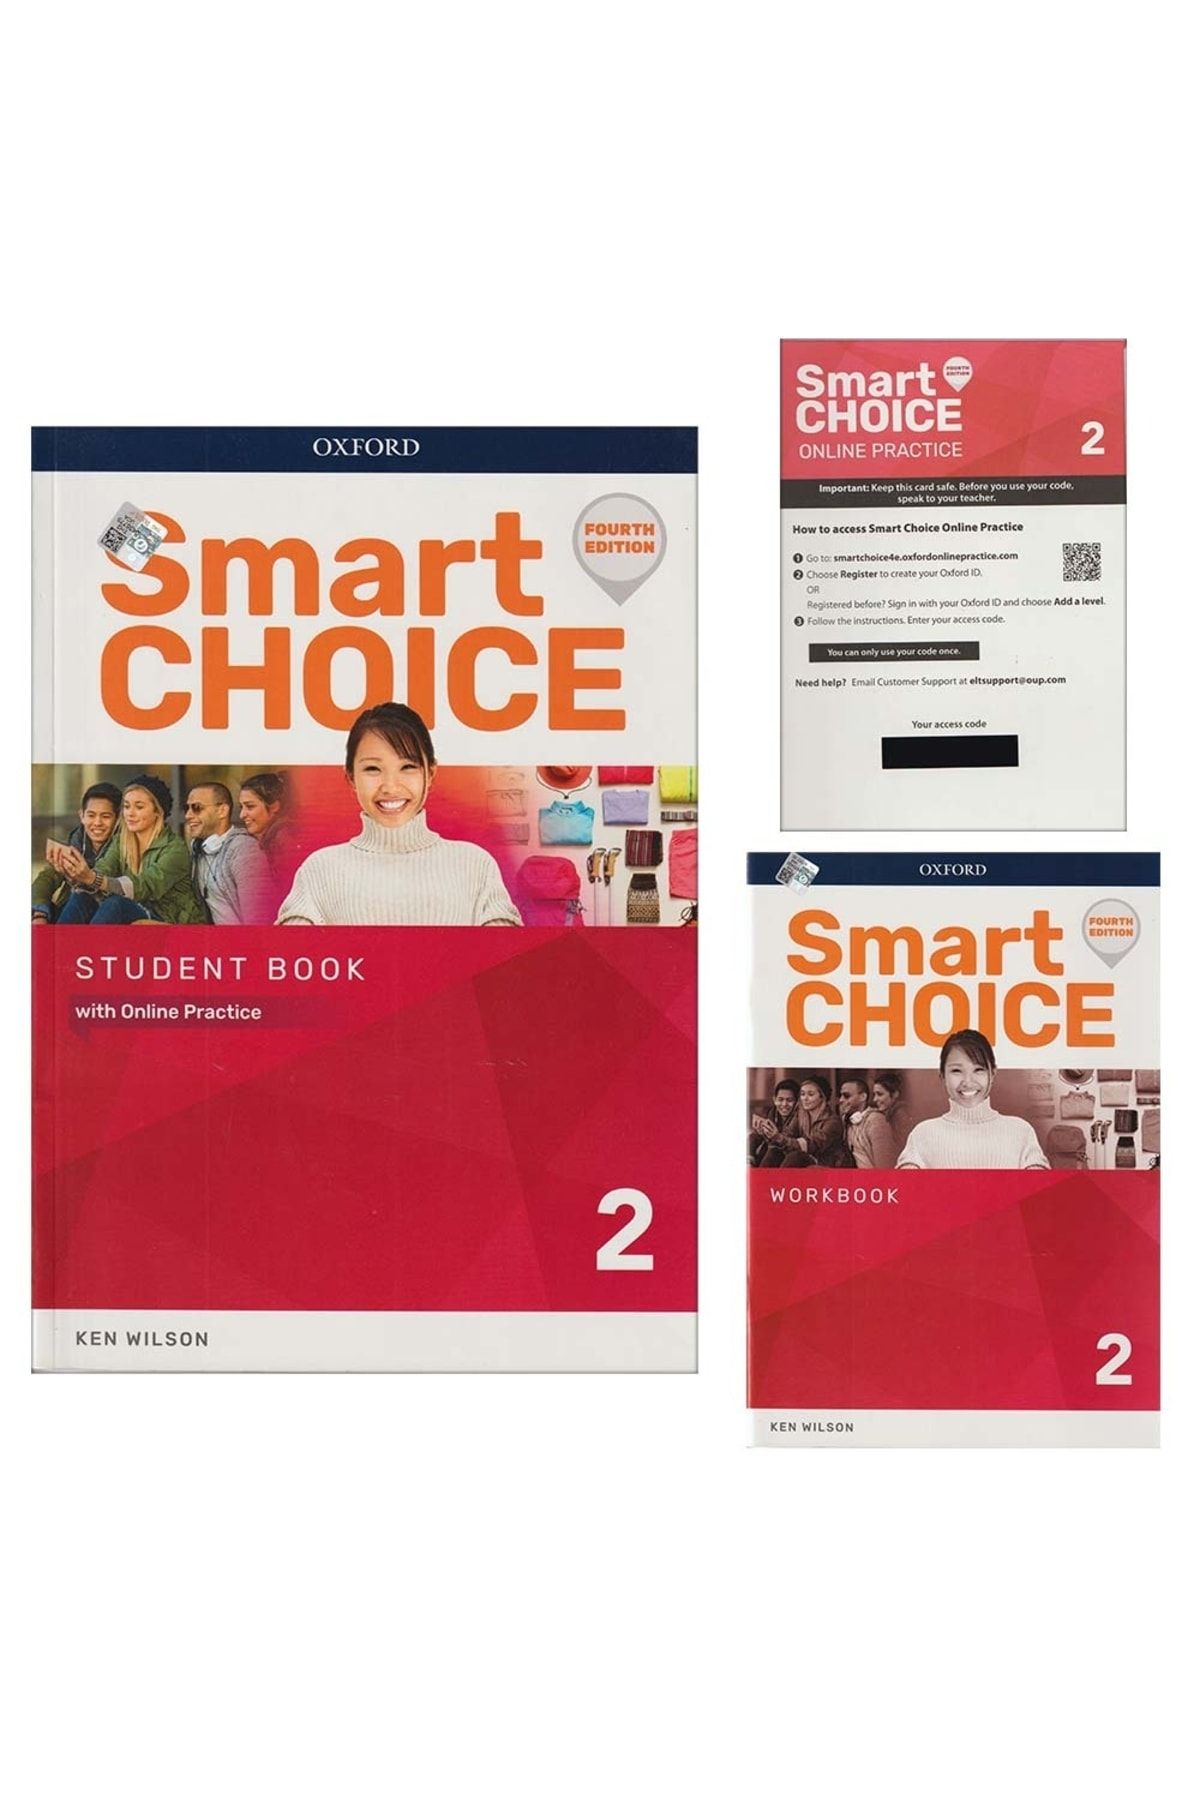 Student　Book　OXFORD　UNIVERSITY　(kodludur)　Practice+workbook　Level　PRESS　Trendyol　Smart　With　Choice　Online　Fiyatı,　Yorumları